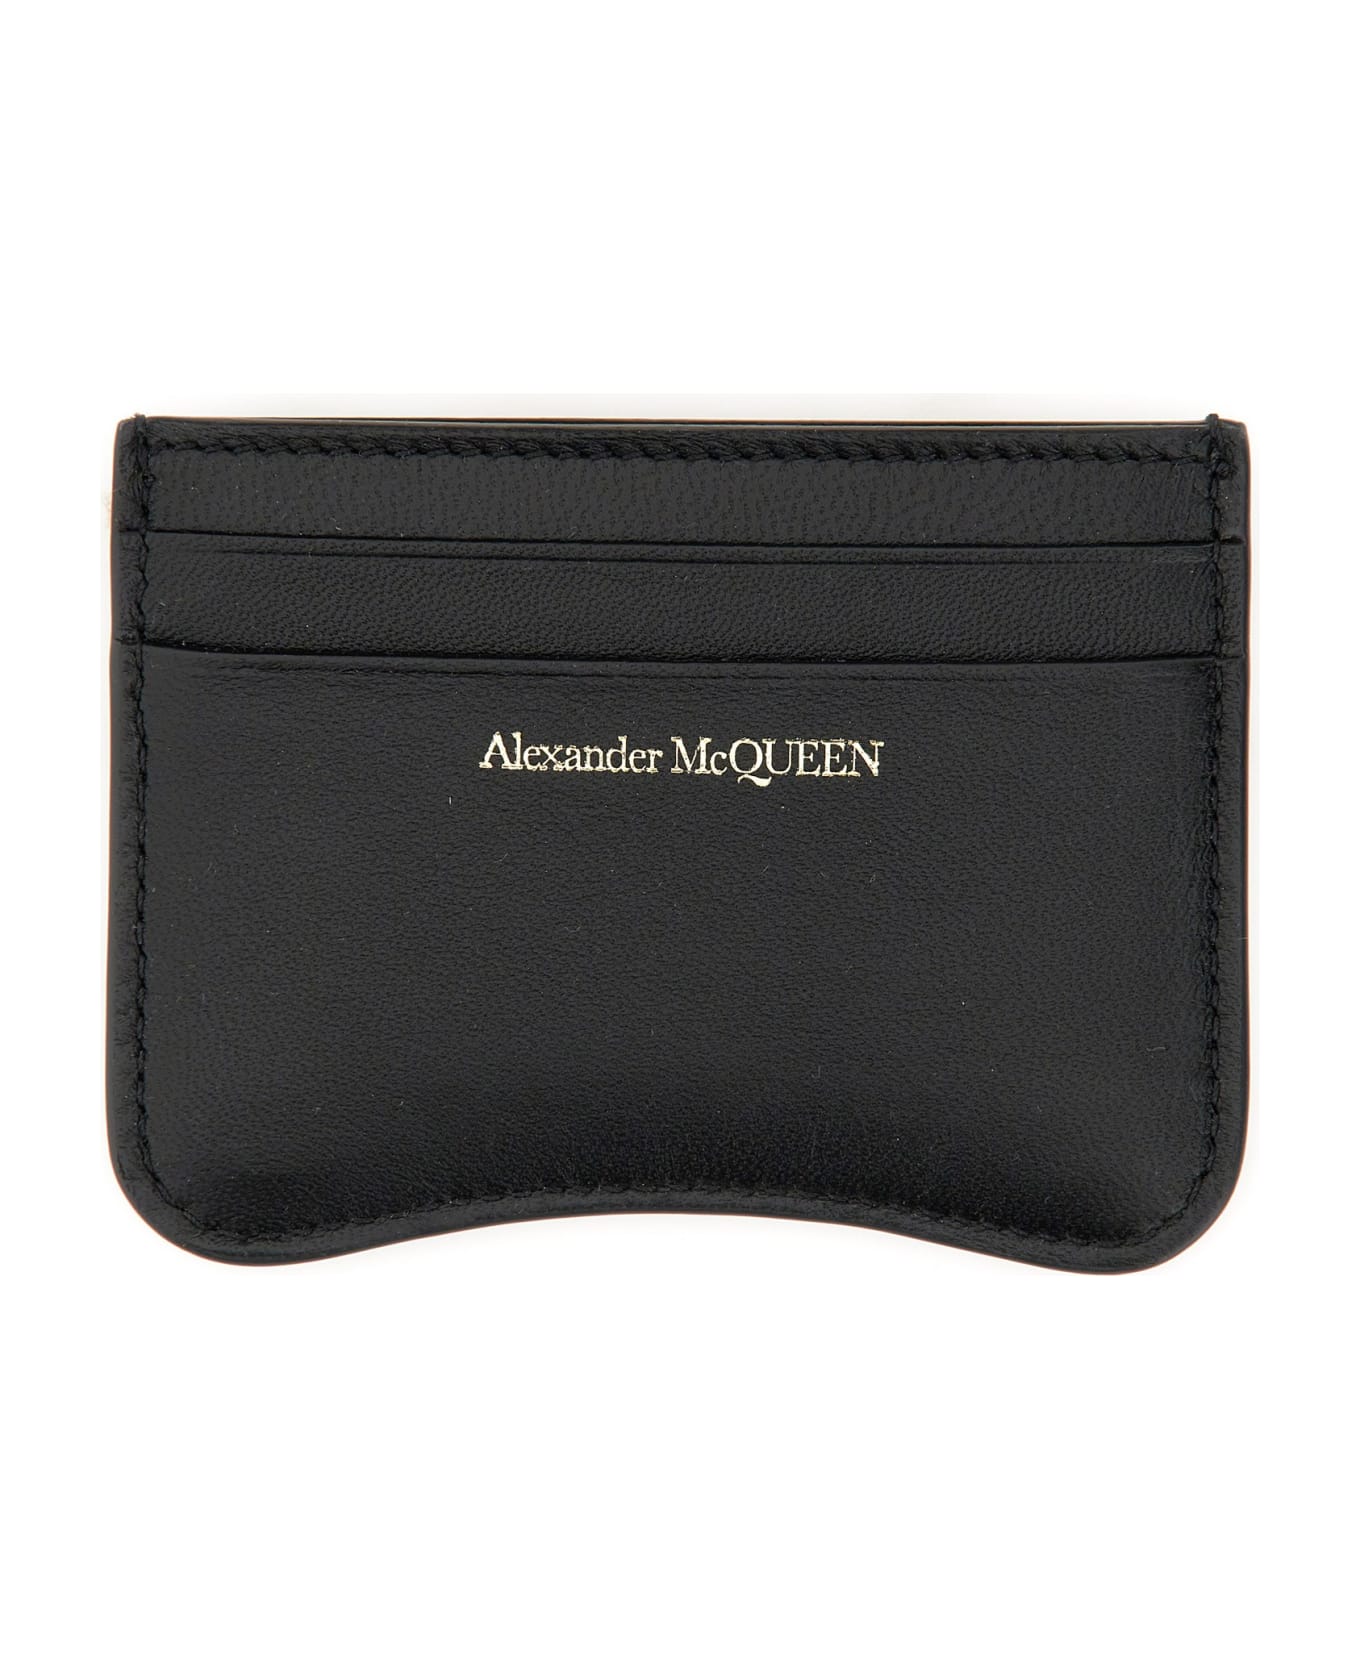 Alexander McQueen The Seal Card Case - NERO 財布